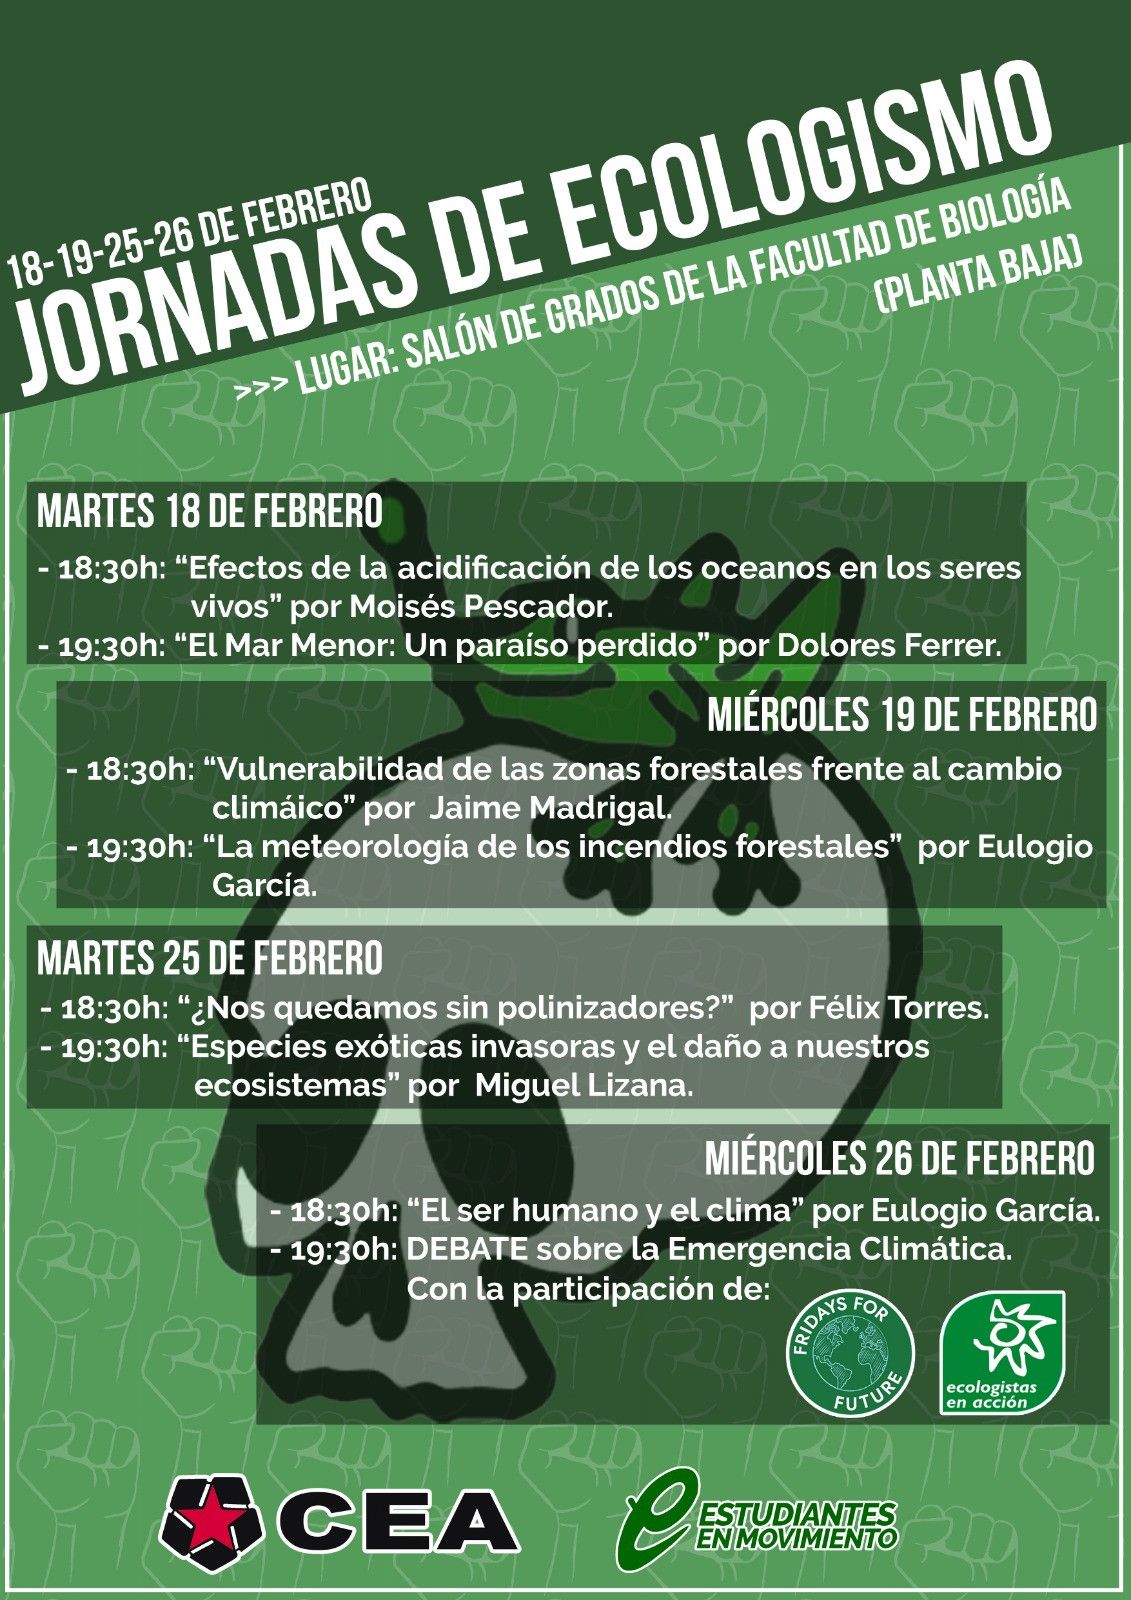 El sindicato de estudiantes CEA organiza unas jornadas de ecologismo en la  Universidad de Salamanca